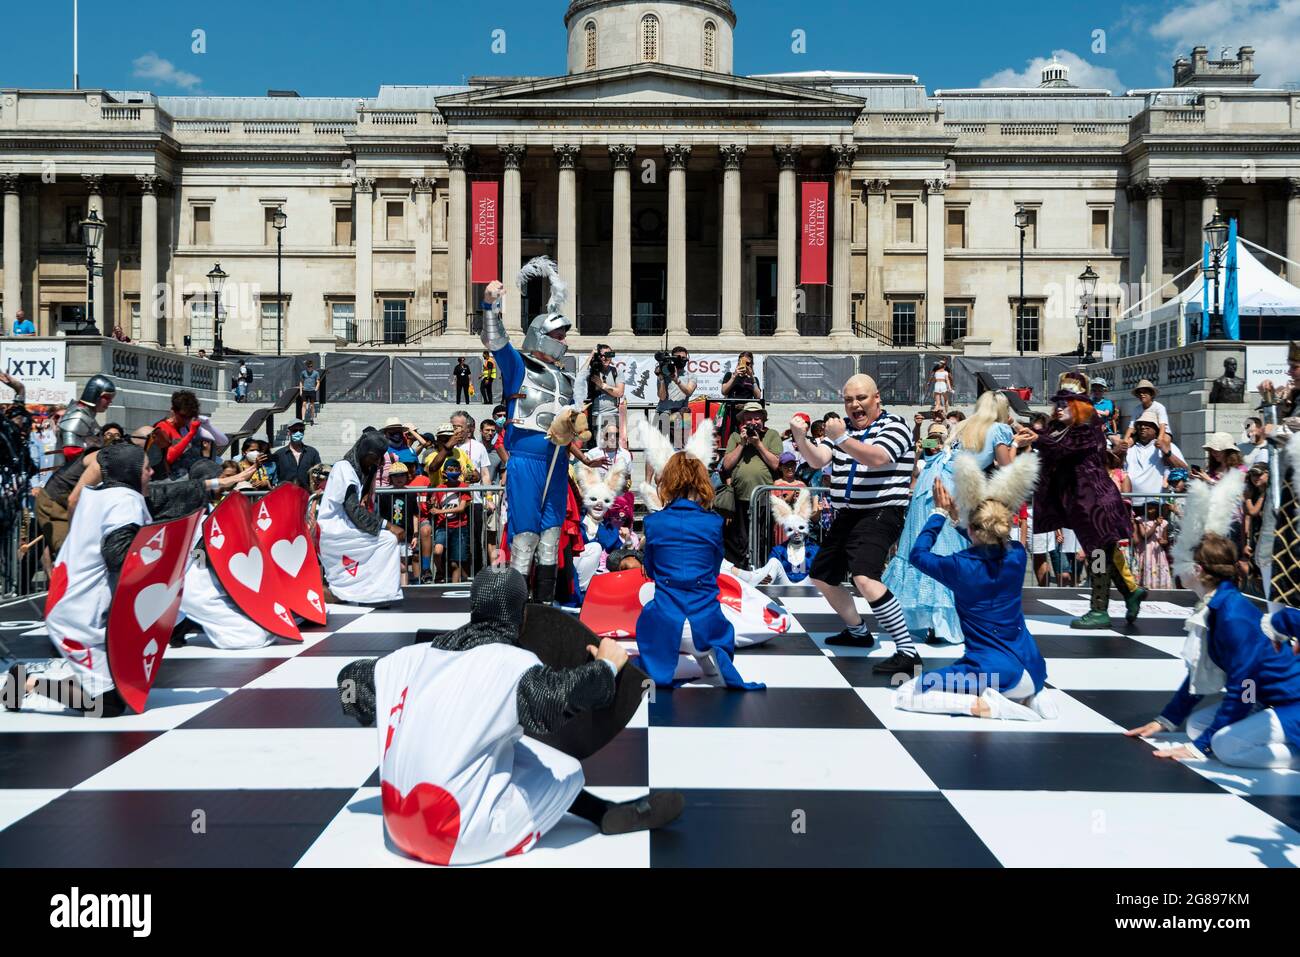 Londres, Royaume-Uni. 18 juillet 2021. Des acteurs costumés prennent part à une partie d'échecs humains à Chess Fest à Trafalgar Square. L'événement célèbre le jeu d'échecs et les visiteurs peuvent apprendre le jeu, jouer aux échecs ou défier un grand maître. De plus, pour célébrer le 150e anniversaire d’Alice de Lewis Carroll à travers le livre look Glass qui présentait le jeu d’échecs, 32 acteurs habillés comme Alice à travers les personnages look Glass se tiennent sur un échiquier géant rejouant un jeu basé sur le livre. Credit: Stephen Chung / Alamy Live News Banque D'Images